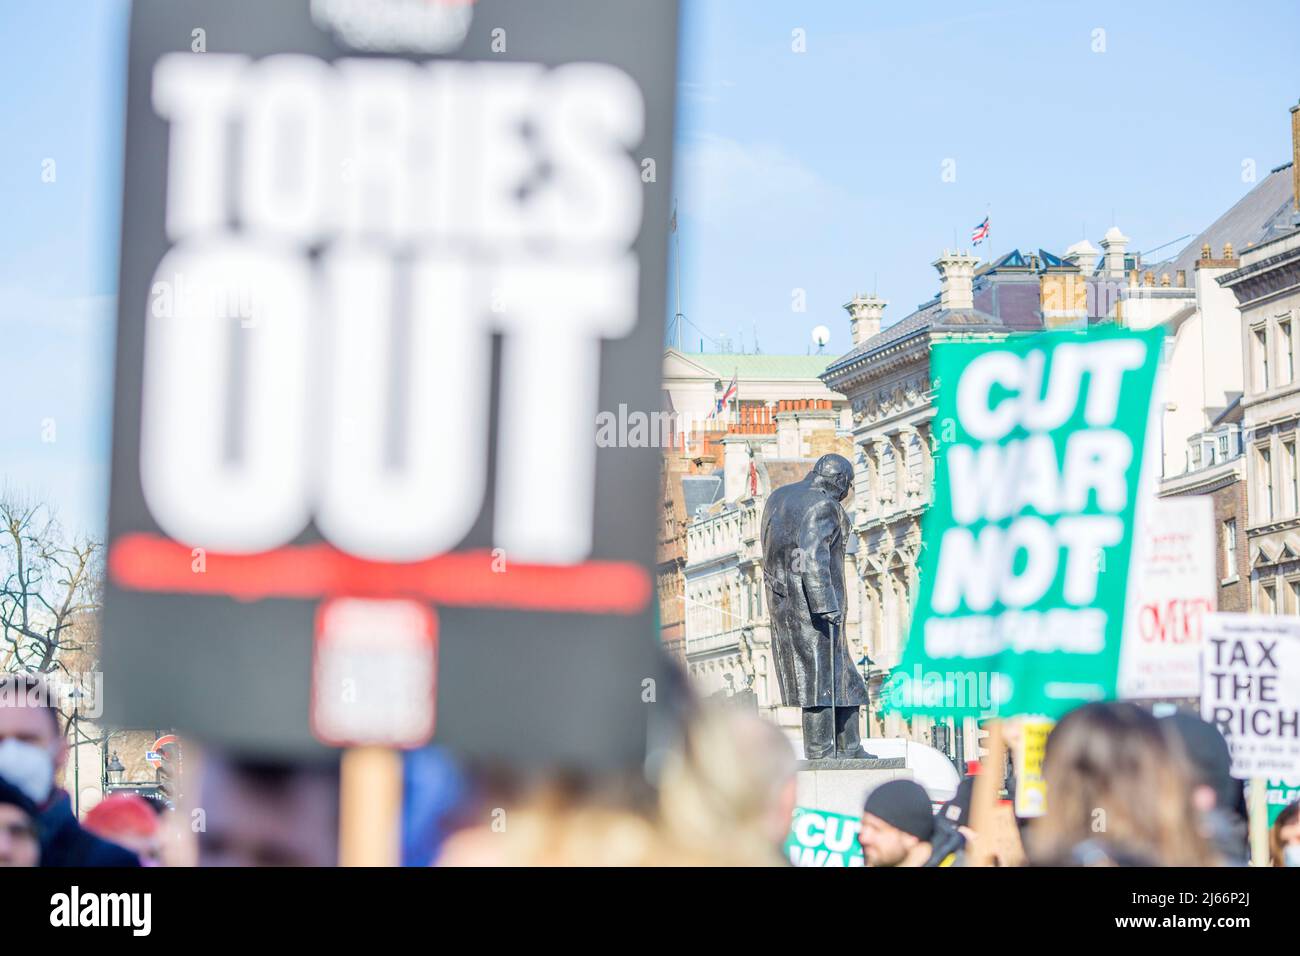 Les participants se réunissent au cours d'une manifestation sur le coût de la vie à la place du Parlement, dans le centre de Londres. Banque D'Images